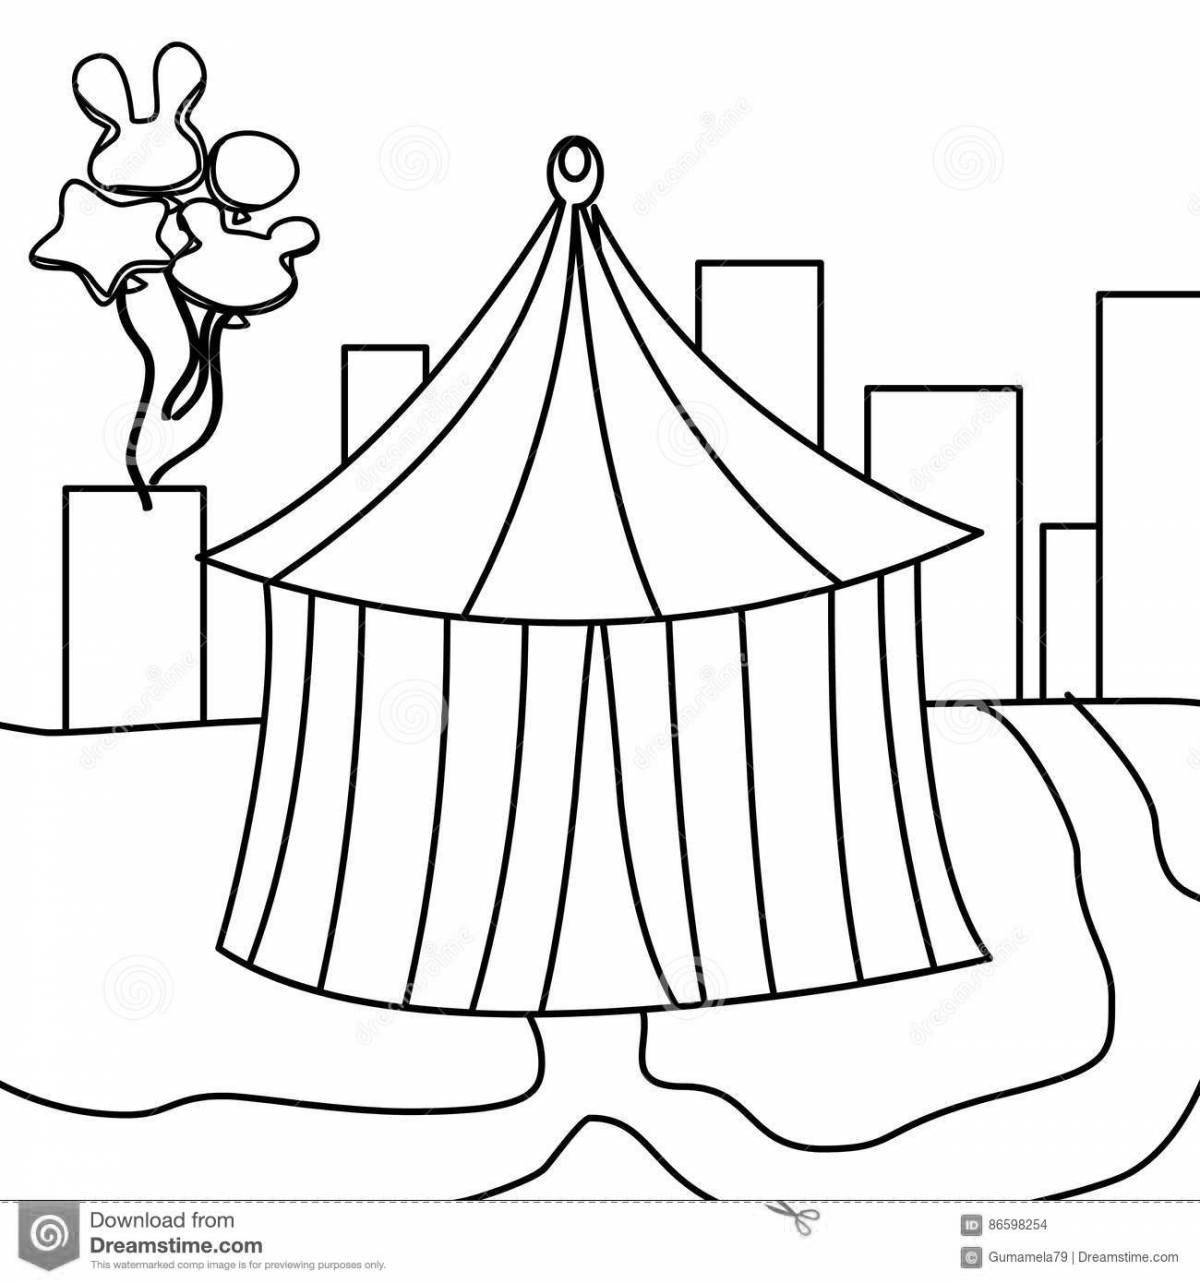 Раскраска игривая цирковая палатка